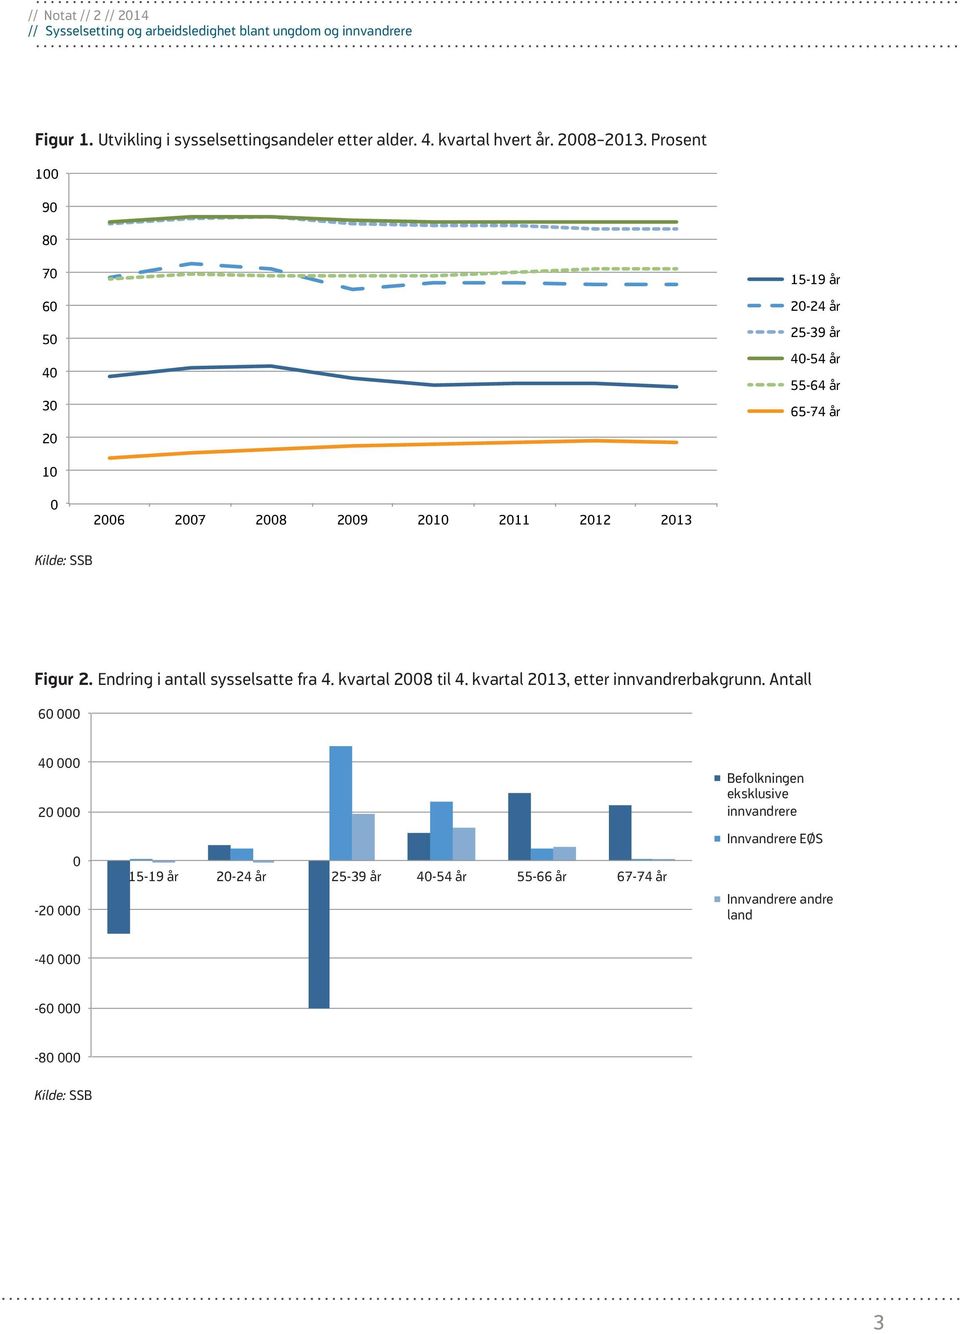 2013 Figur 2. Endring i antall sysselsatte fra 4. kvartal 2008 til 4. kvartal 2013, etter innvandrerbakgrunn.